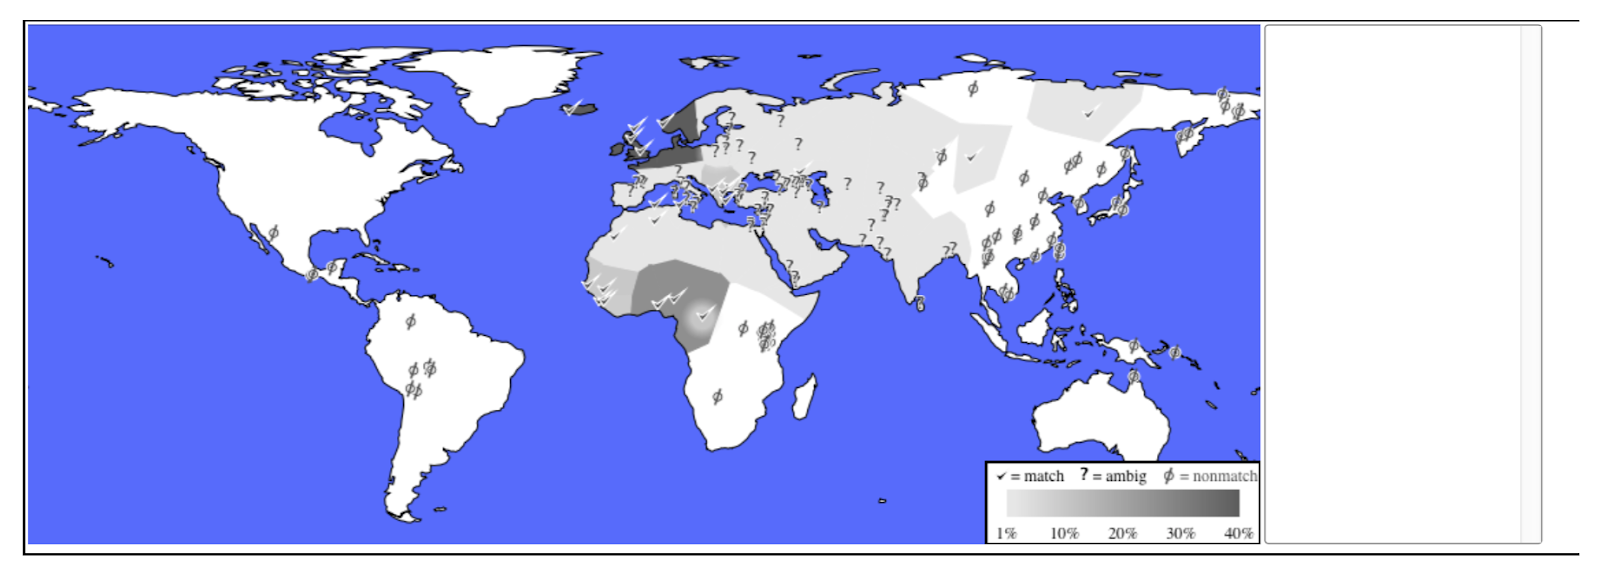 Инжир. 1c: процент совпадающих этнических групп населения по всему миру.